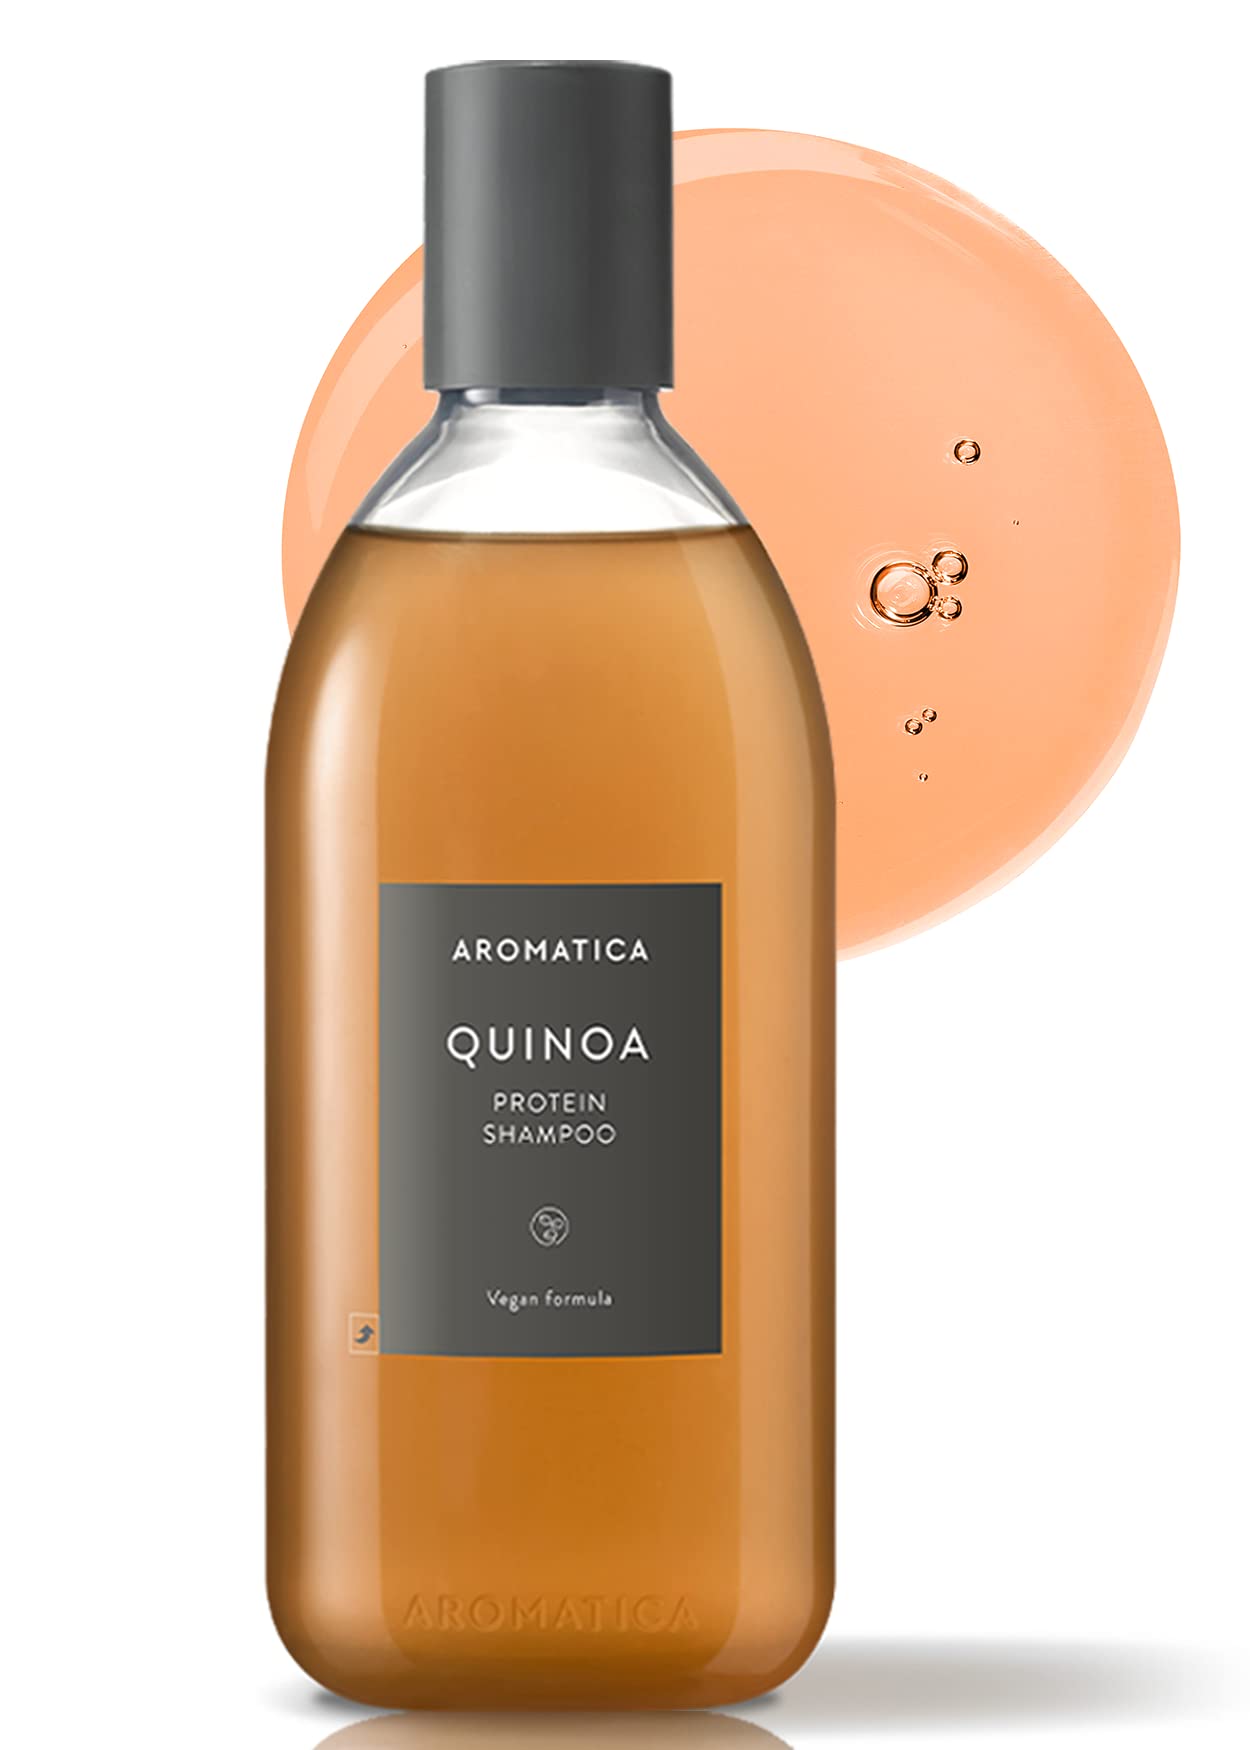 Quinoa protein Shampoo by Aromatica